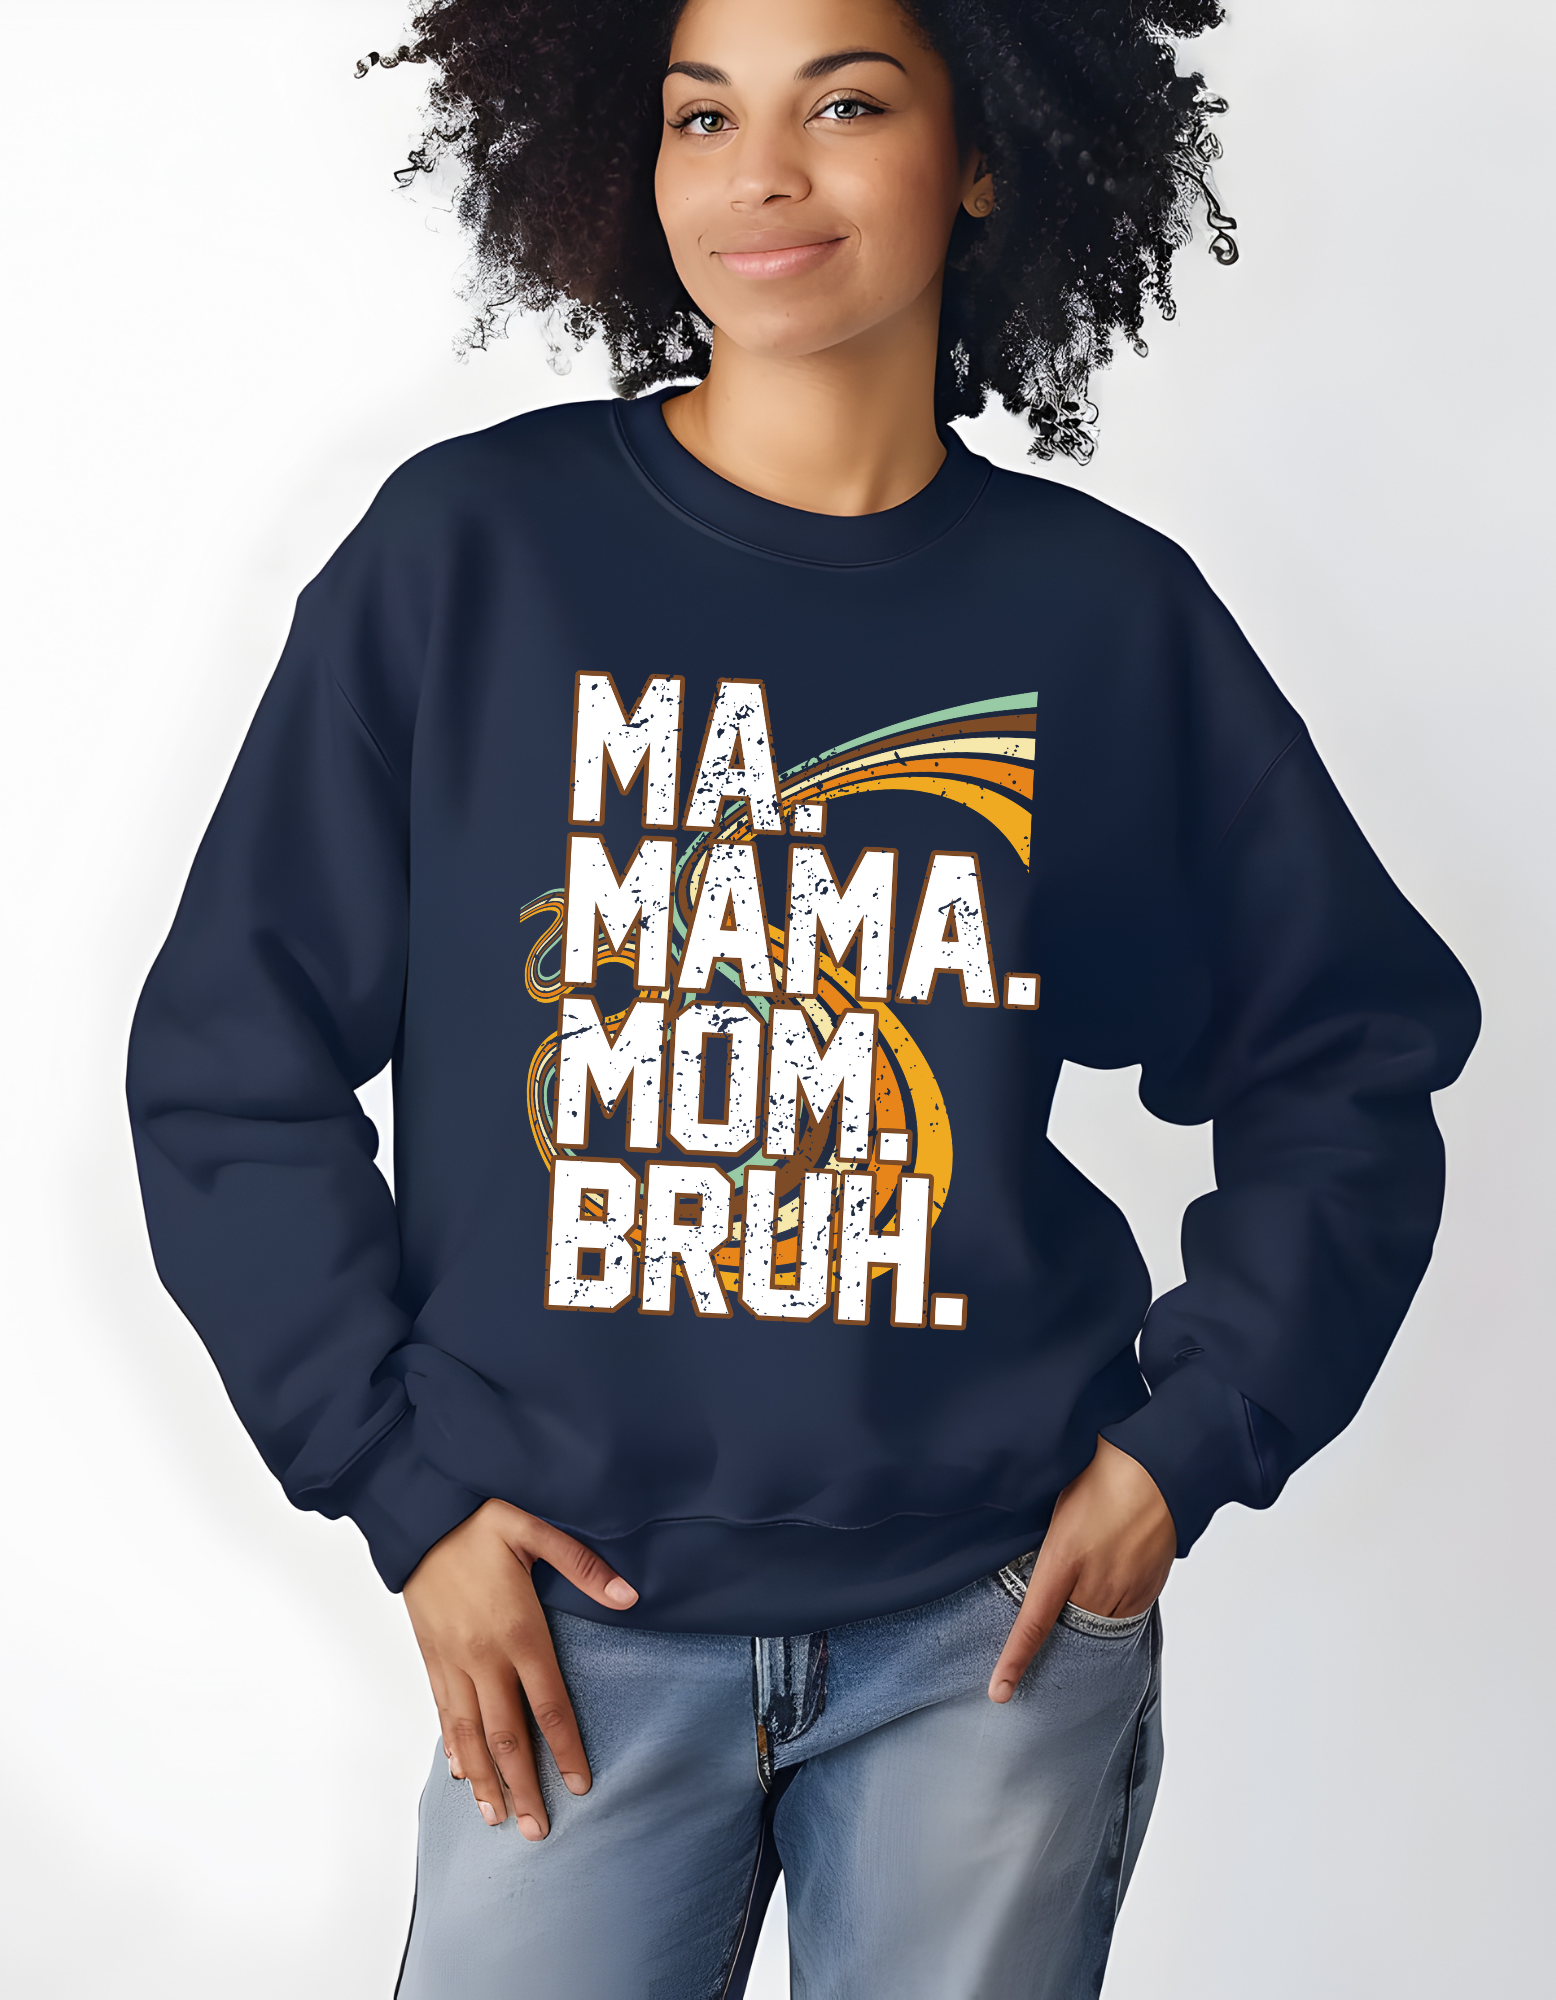 Ma, Mama, Mom, Bruh. ..Gildan Sweatshirt.